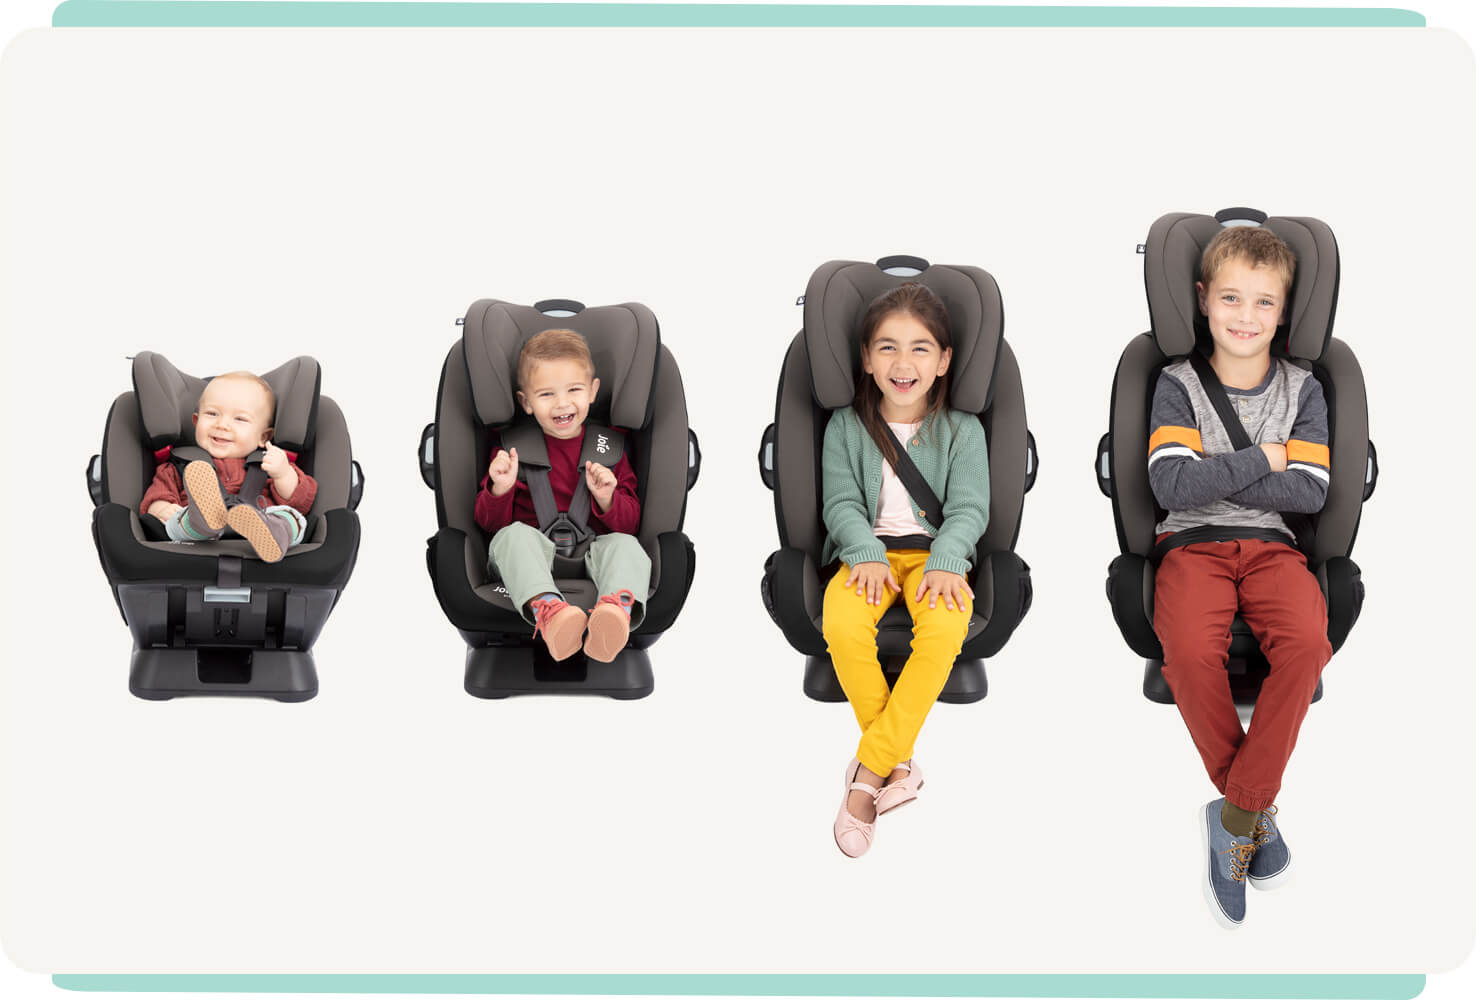  4 niños de diferentes edades sentados uno al lado del otro en sillas de coche Joie Every Stage: de izquierda a derecha, un bebé, un bebé más mayor, un niño pequeño y un niño mayor.